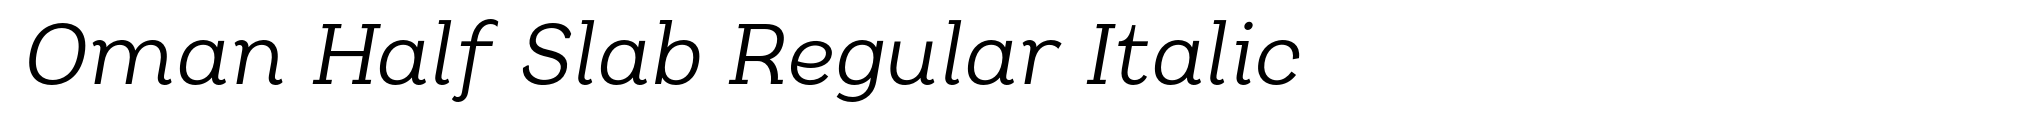 Oman Half Slab Regular Italic image